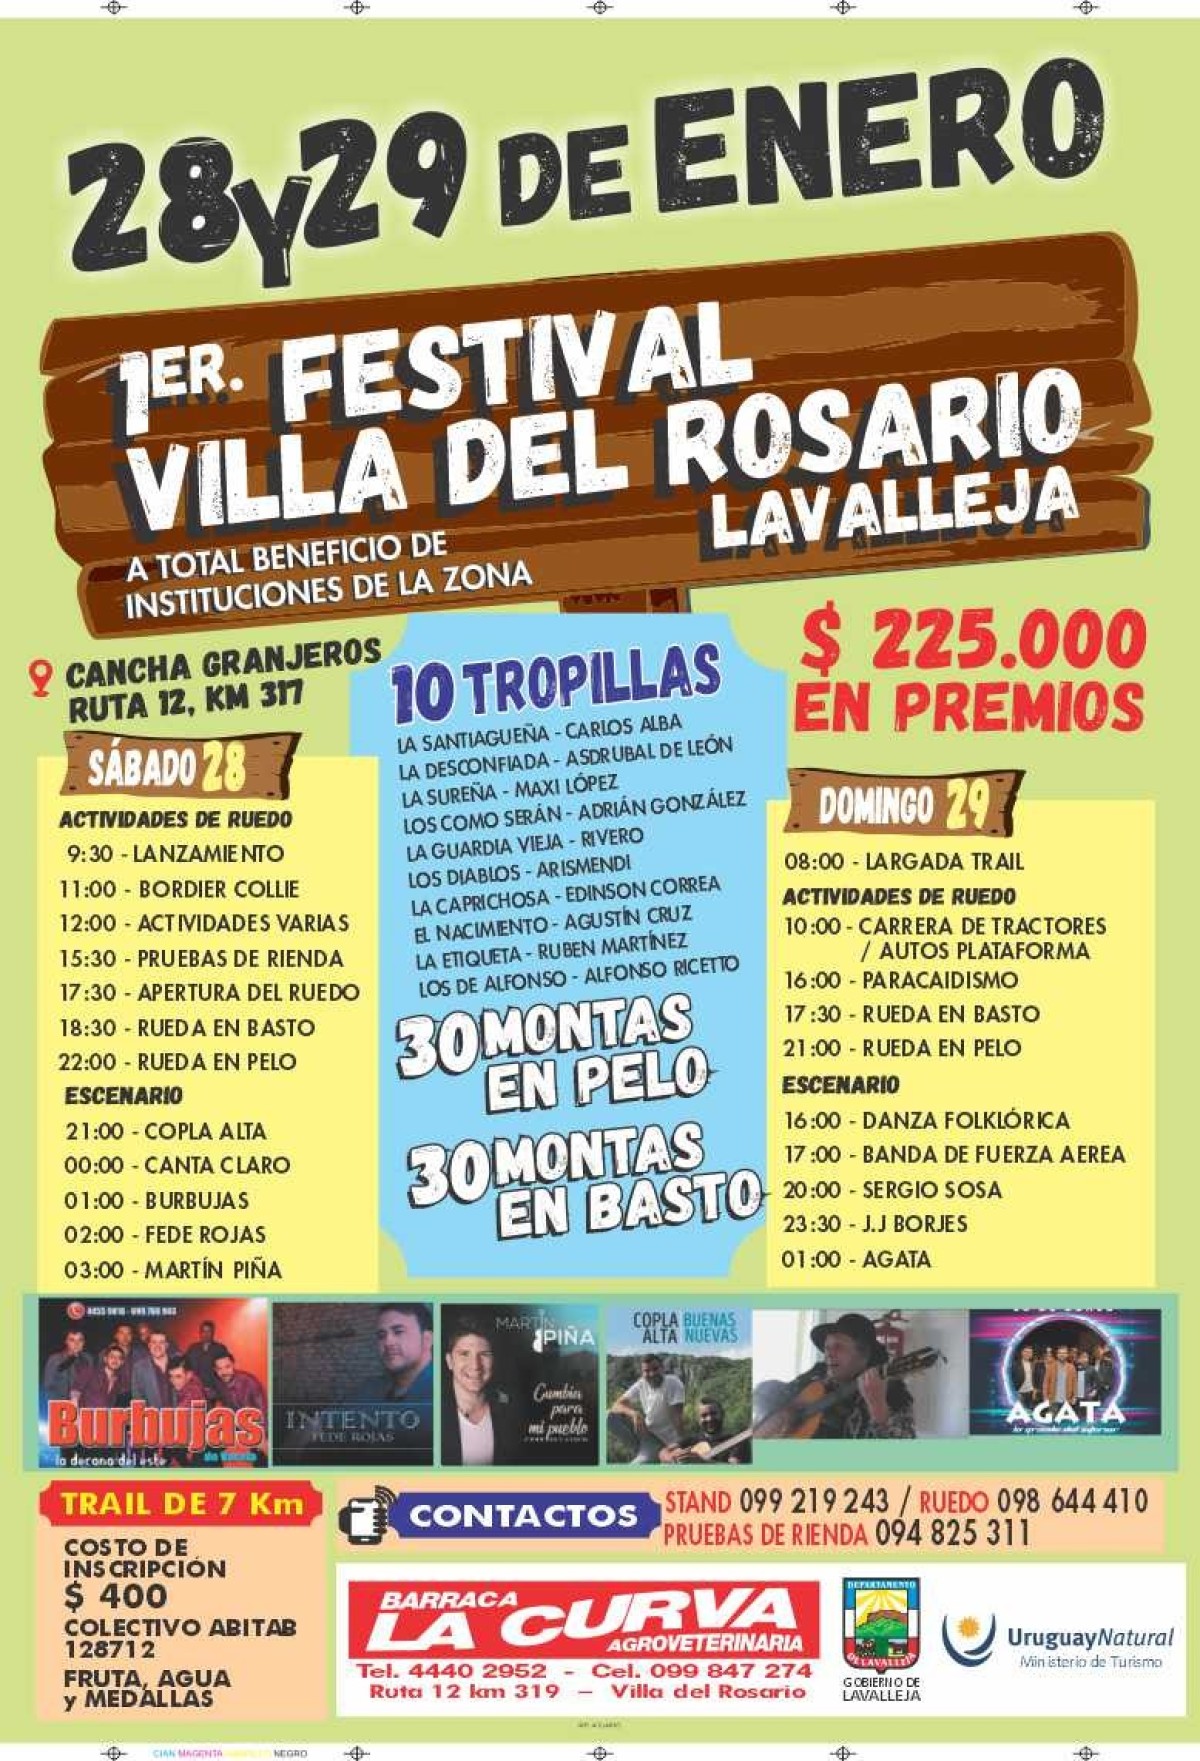 El primer festival de Villa del Rosario se celebra este fin de semana